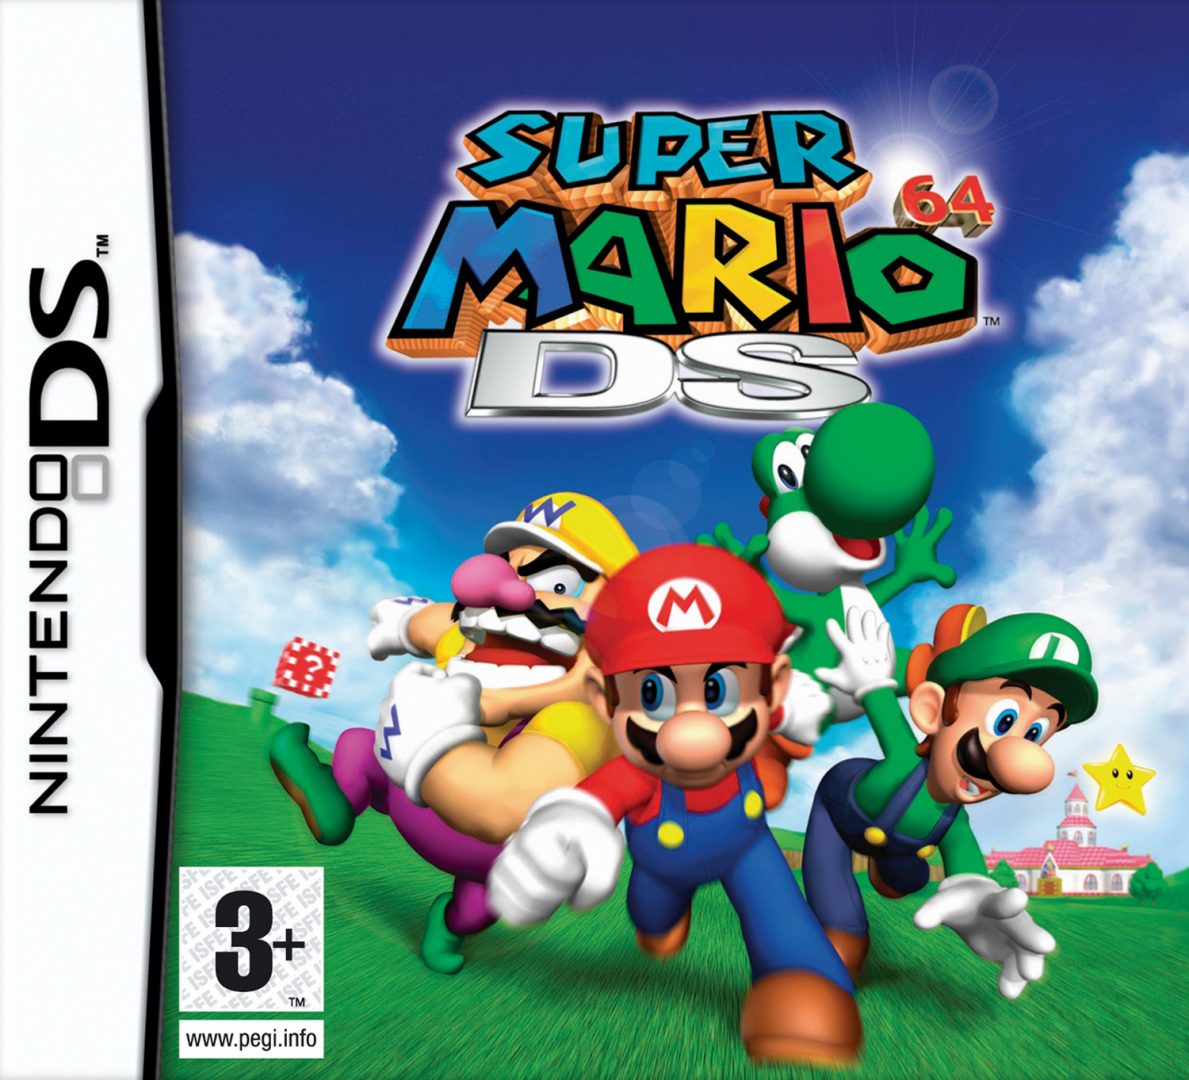 The coverart image of Super Mario 64 DS